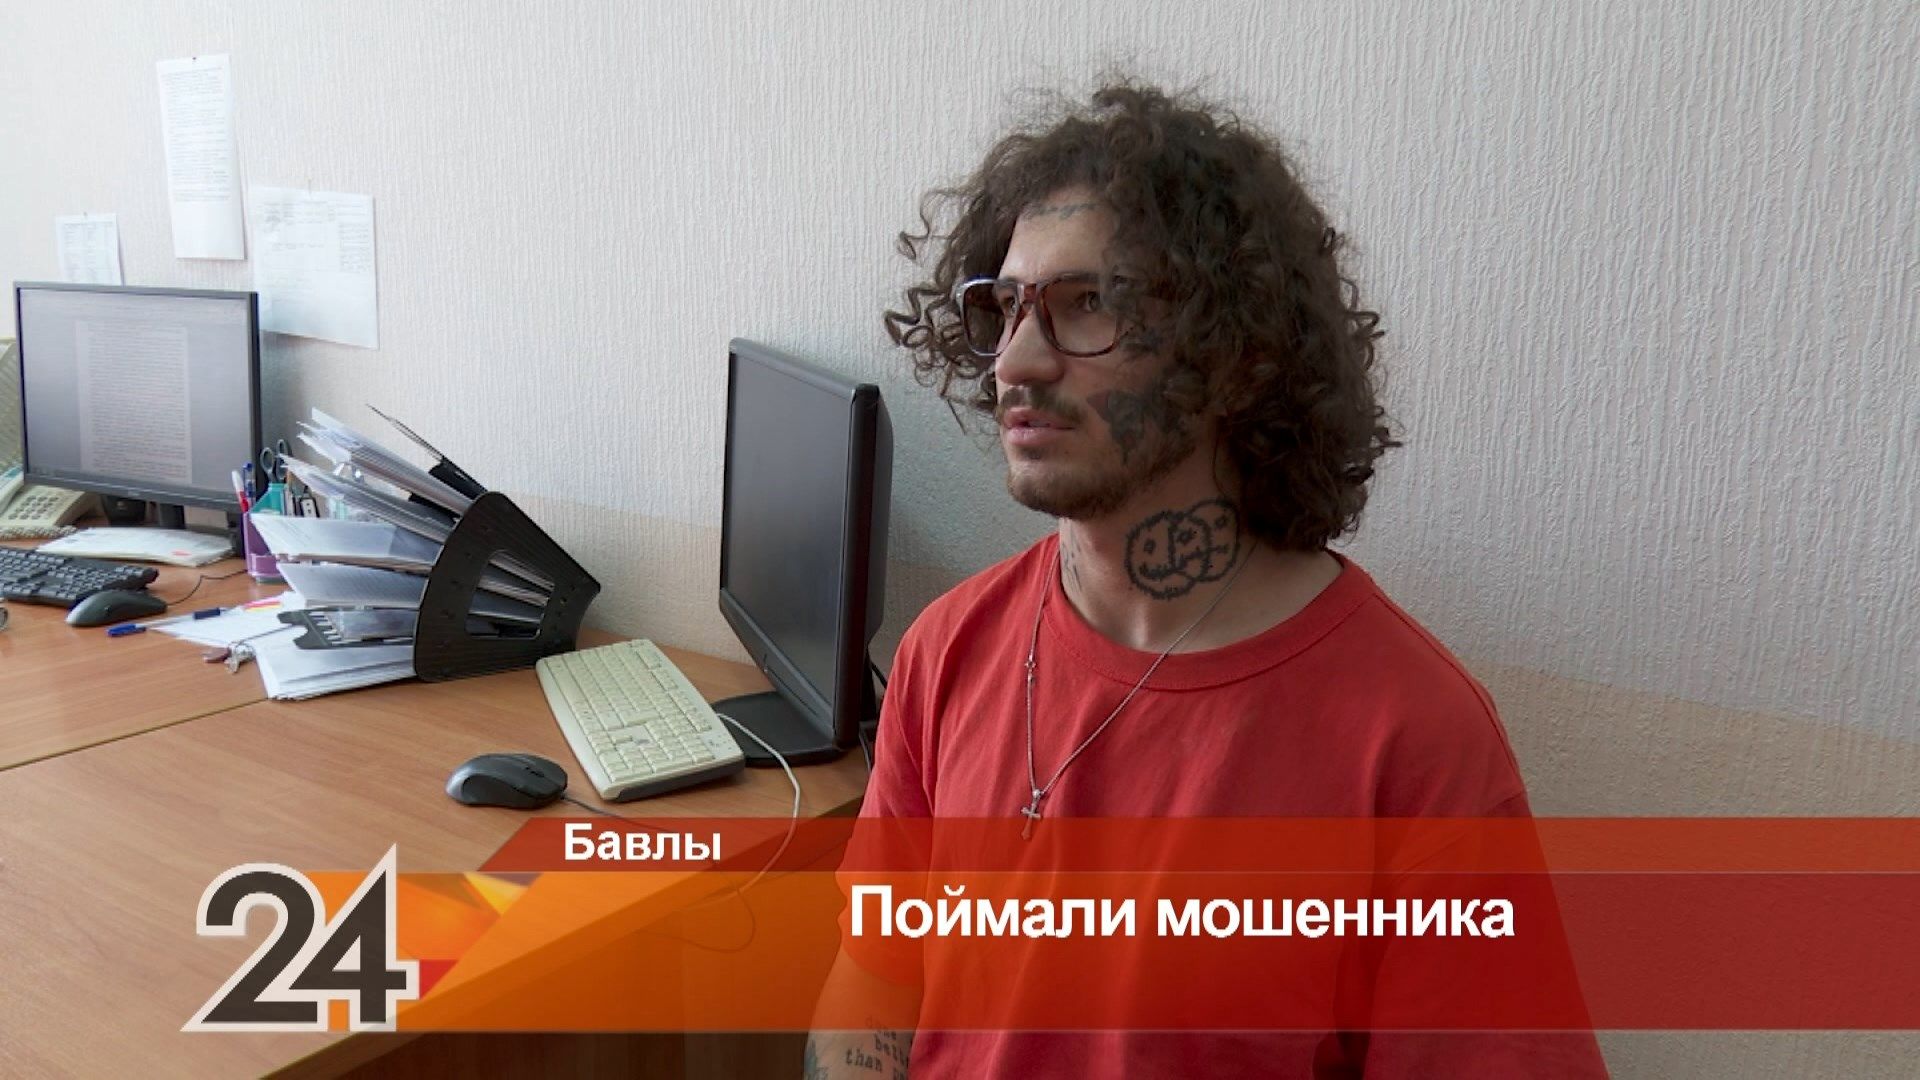 Народ жадный и доверчивый: мошенник рассказал на камеру о преступлениях в Татарстане